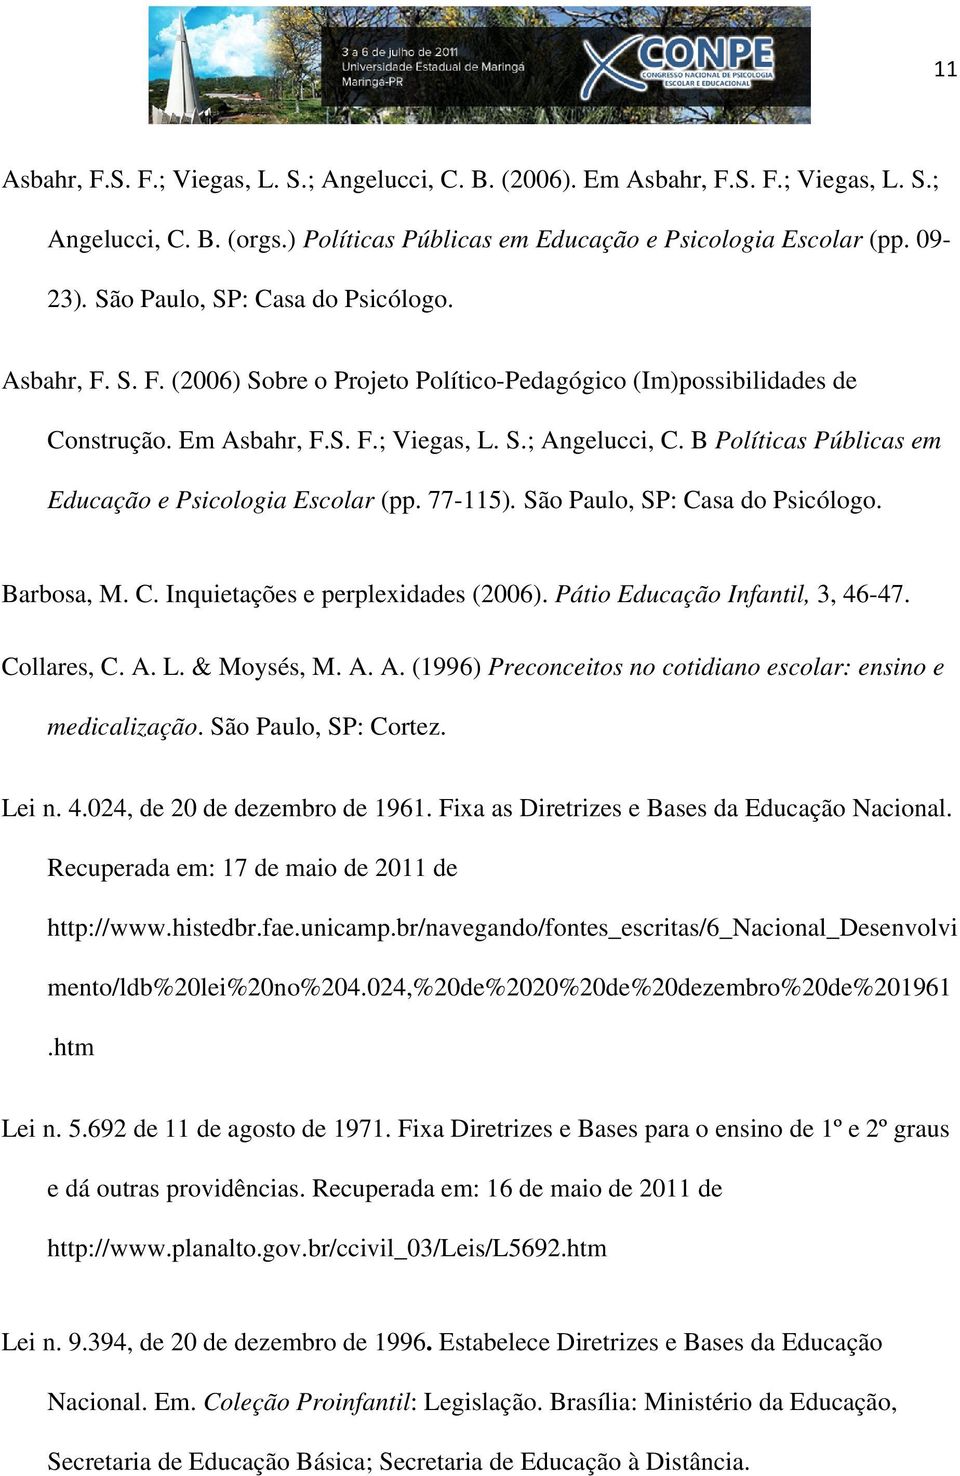 B Políticas Públicas em Educação e Psicologia Escolar (pp. 77-115). São Paulo, SP: Casa do Psicólogo. Barbosa, M. C. Inquietações e perplexidades (2006). Pátio Educação Infantil, 3, 46-47.